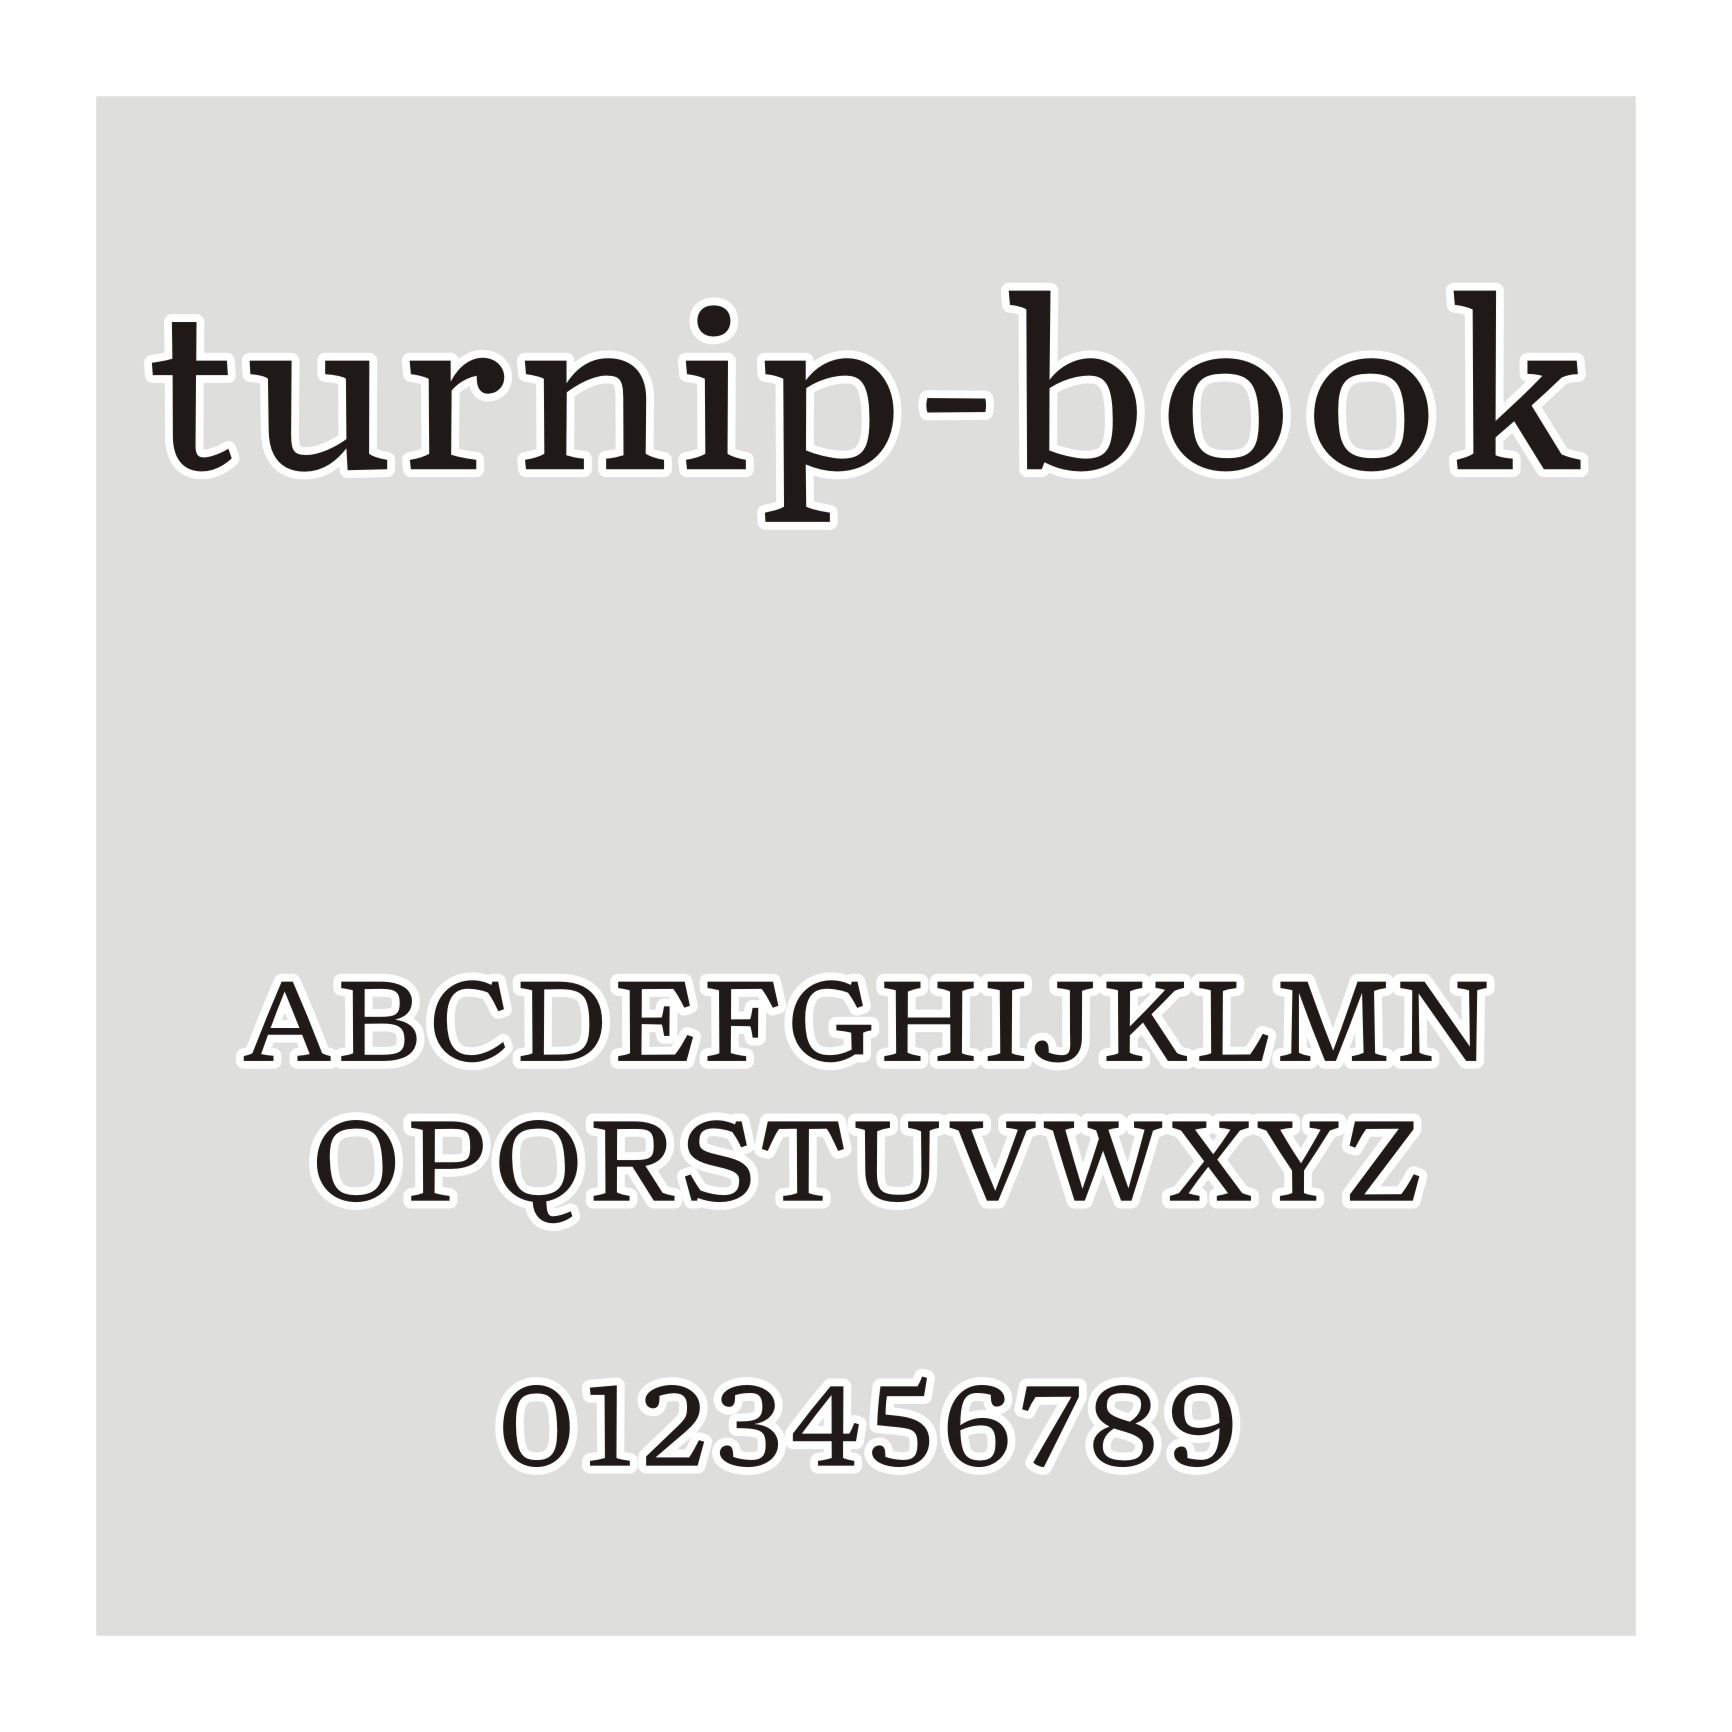 turnip-book